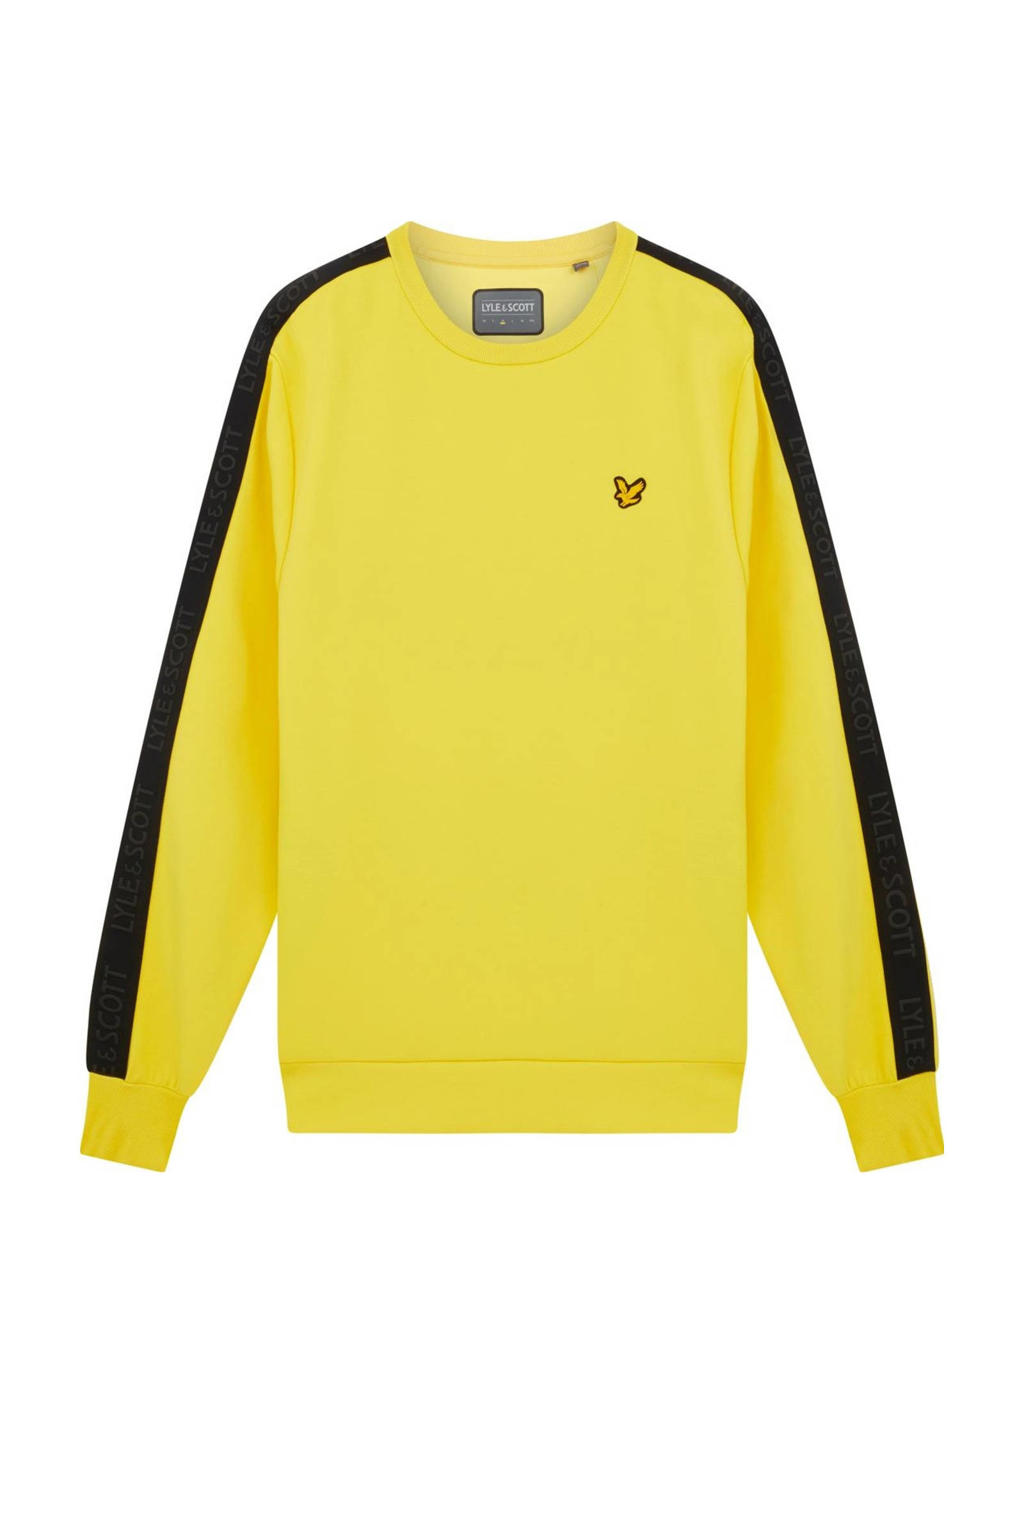 Lyle & Scott sweater geel/zwart